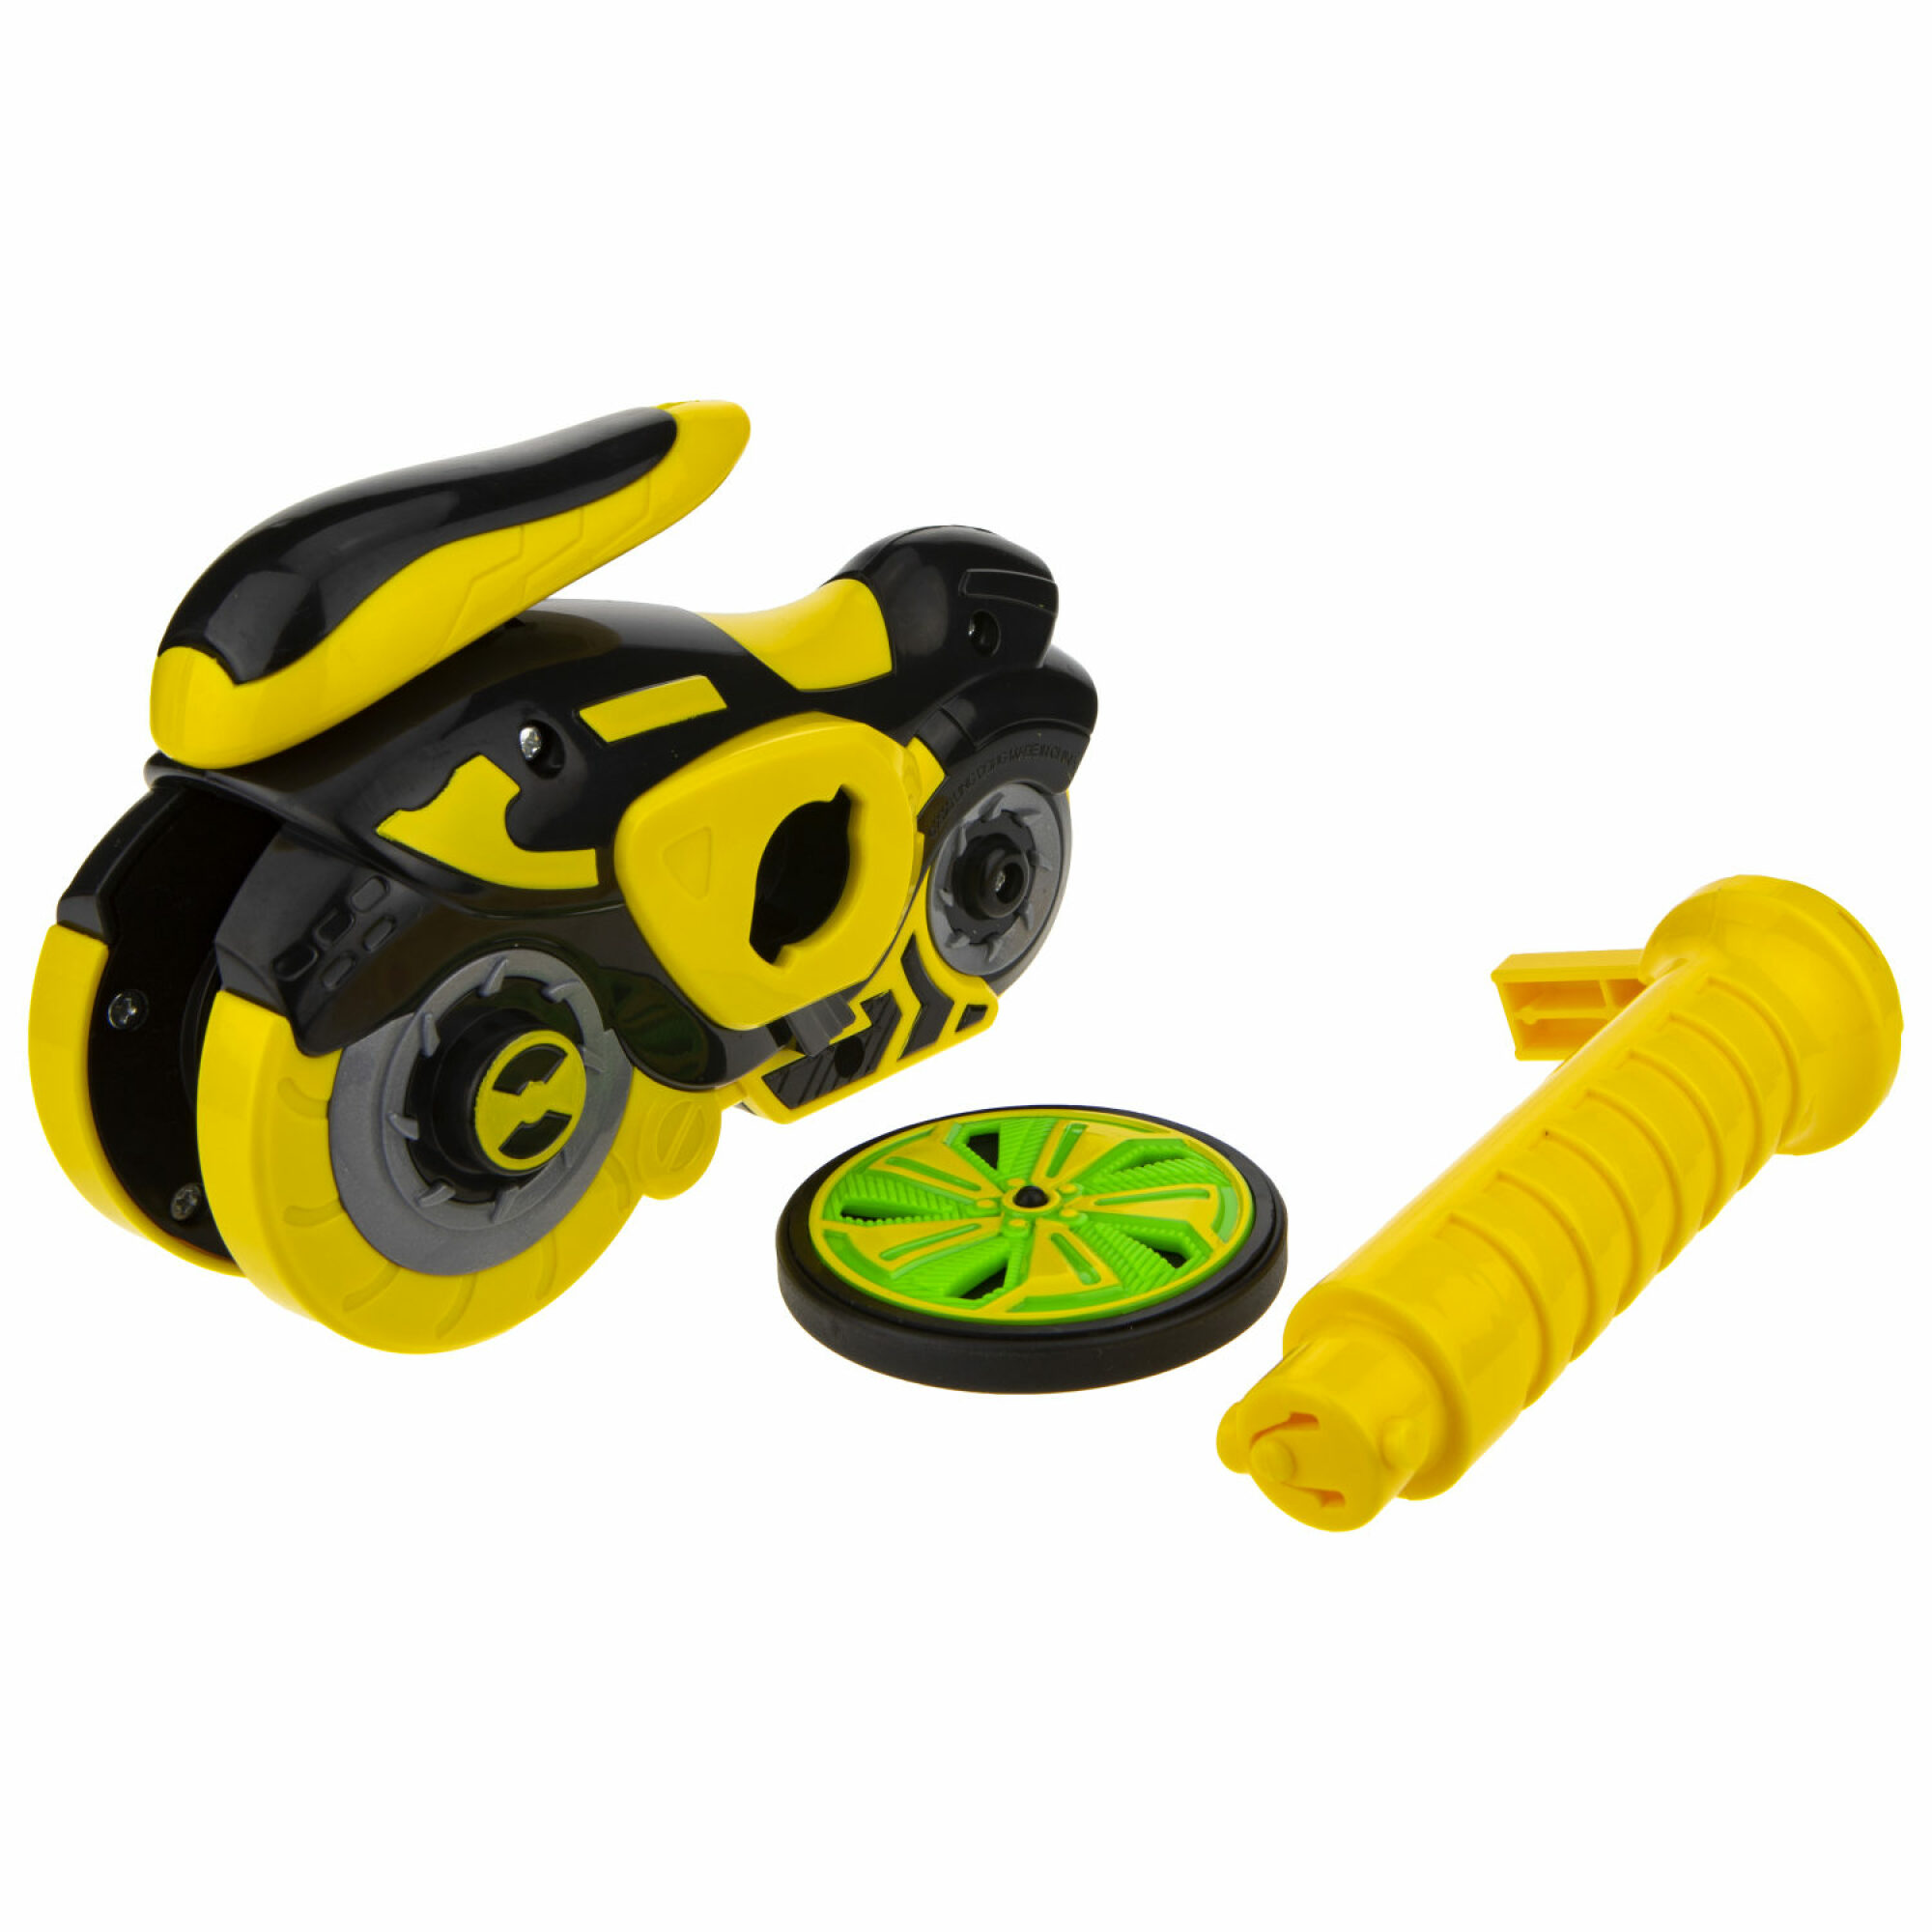 Spin racers. Хот Вилс спин рейсер. Спин рейсер игрушка. Игровой набор hot Wheels Spin Racer желтый призрак с диском 16 см желтый. Колесо-гироскоп hot Wheels.